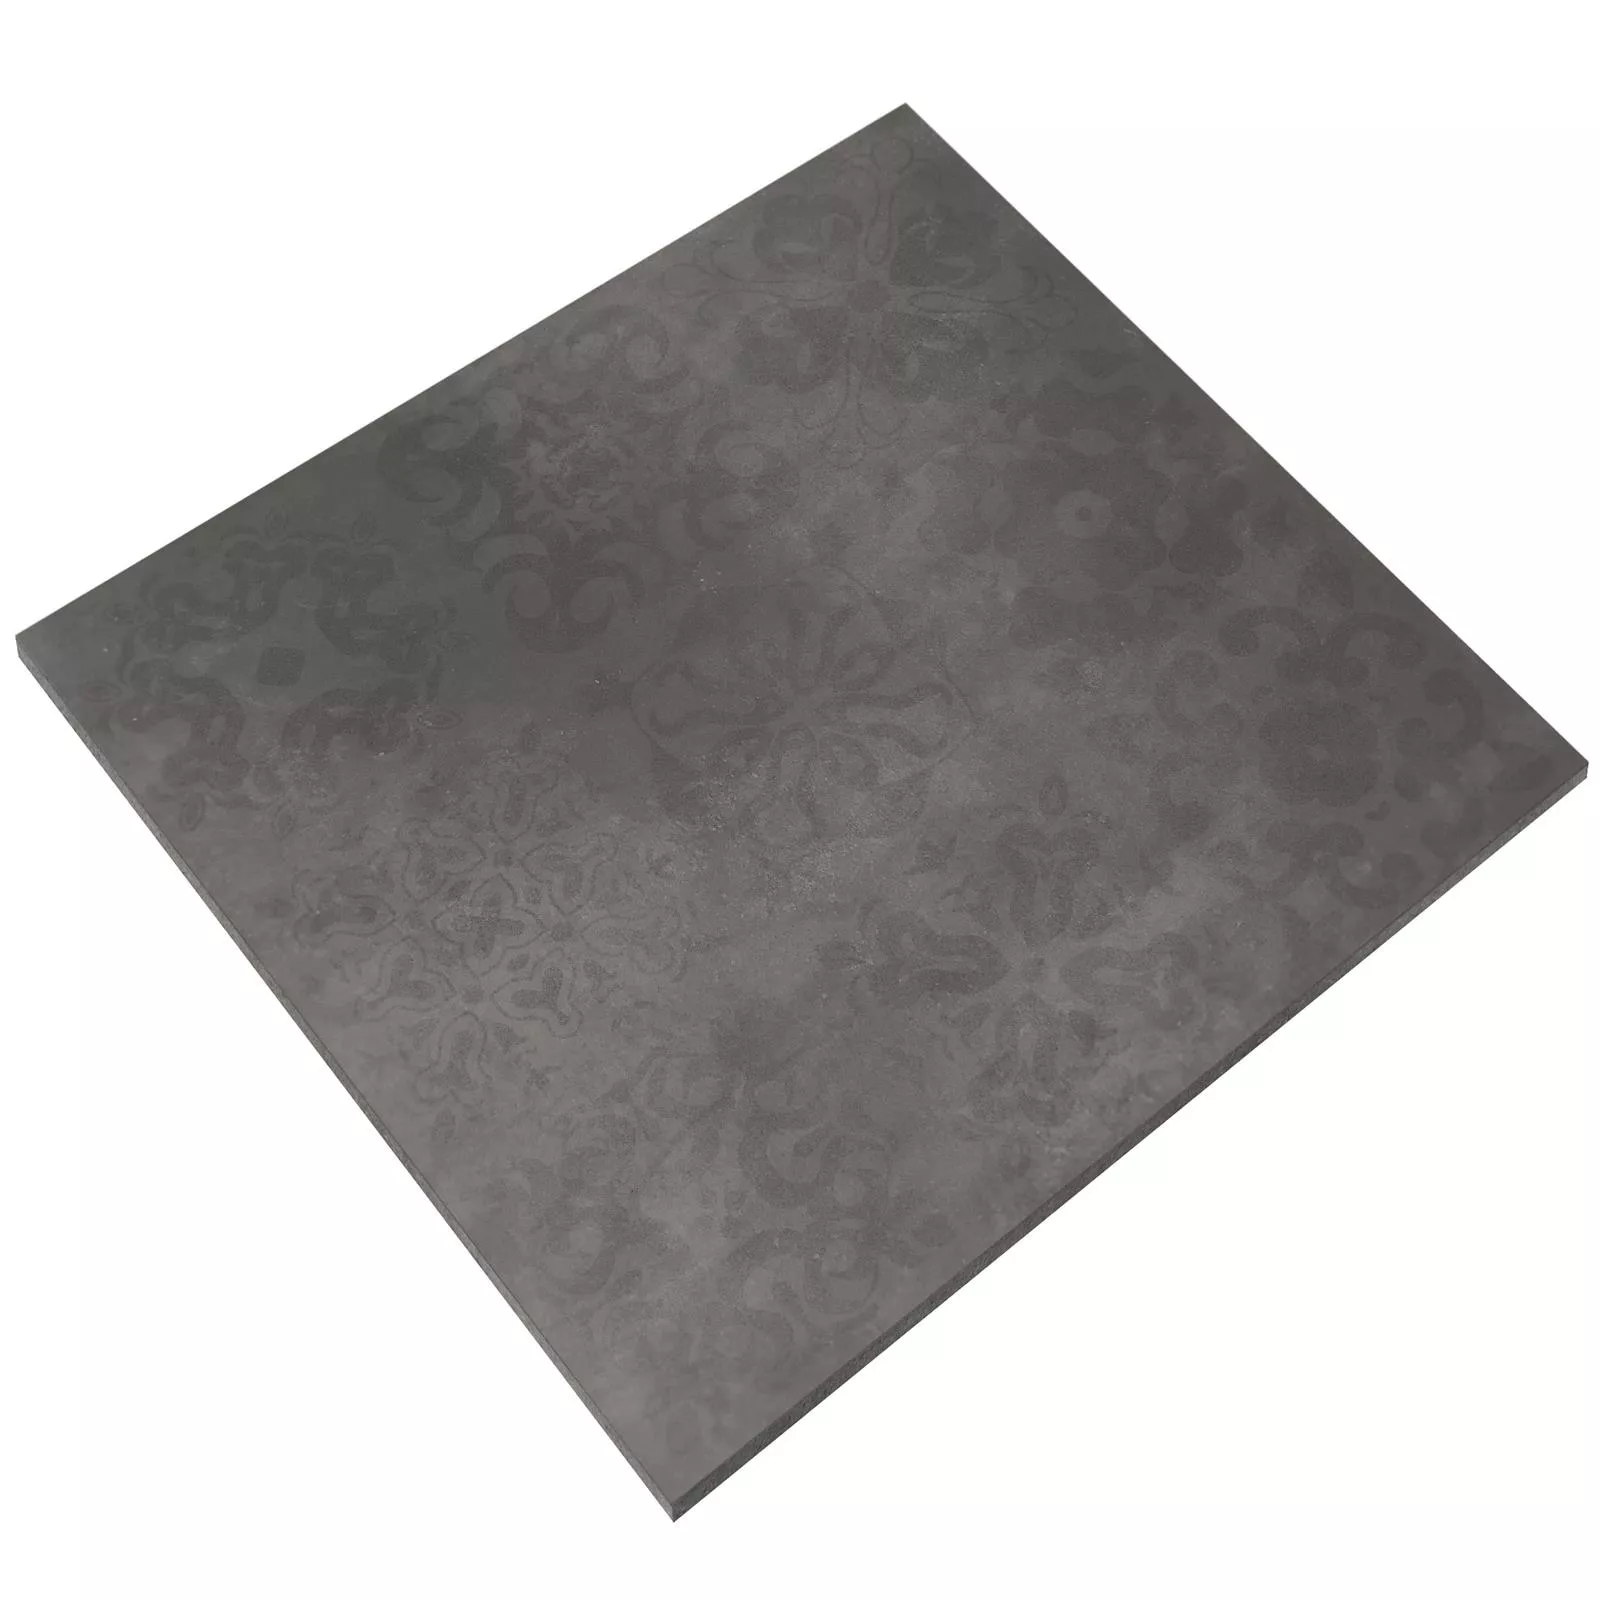 Πλακάκια Δαπέδου Kolossal Διορθώθηκε R10/B Ανθρακίτης 60x60x0,7cm Ντεκόρ